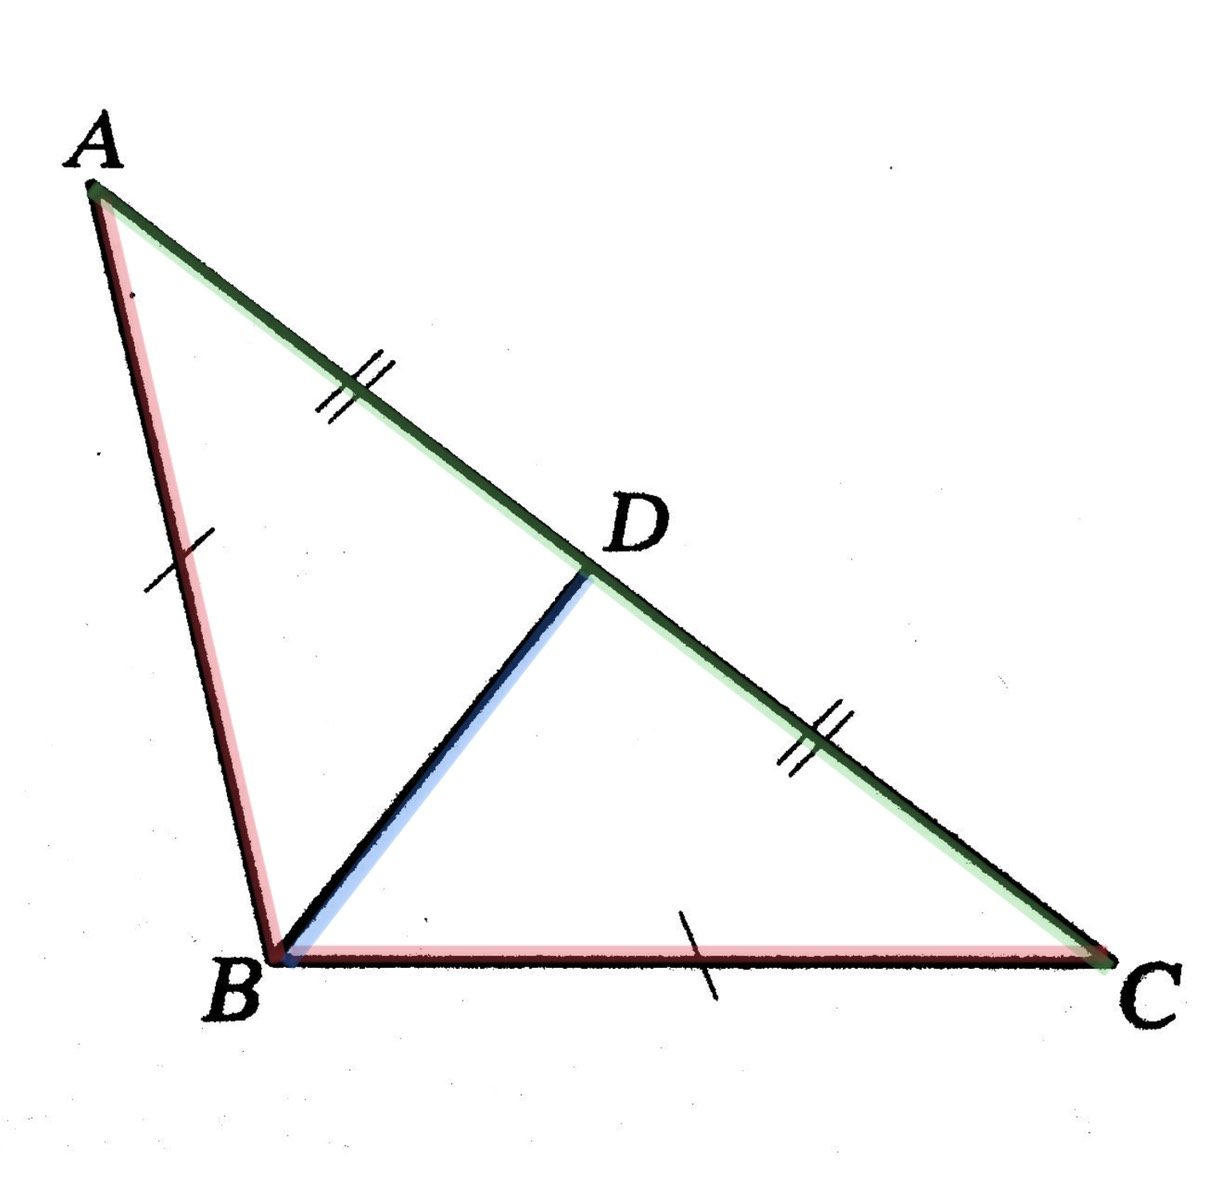 สามเหลี่ยมหน้าจั่วเท่ากันทุกปประการ